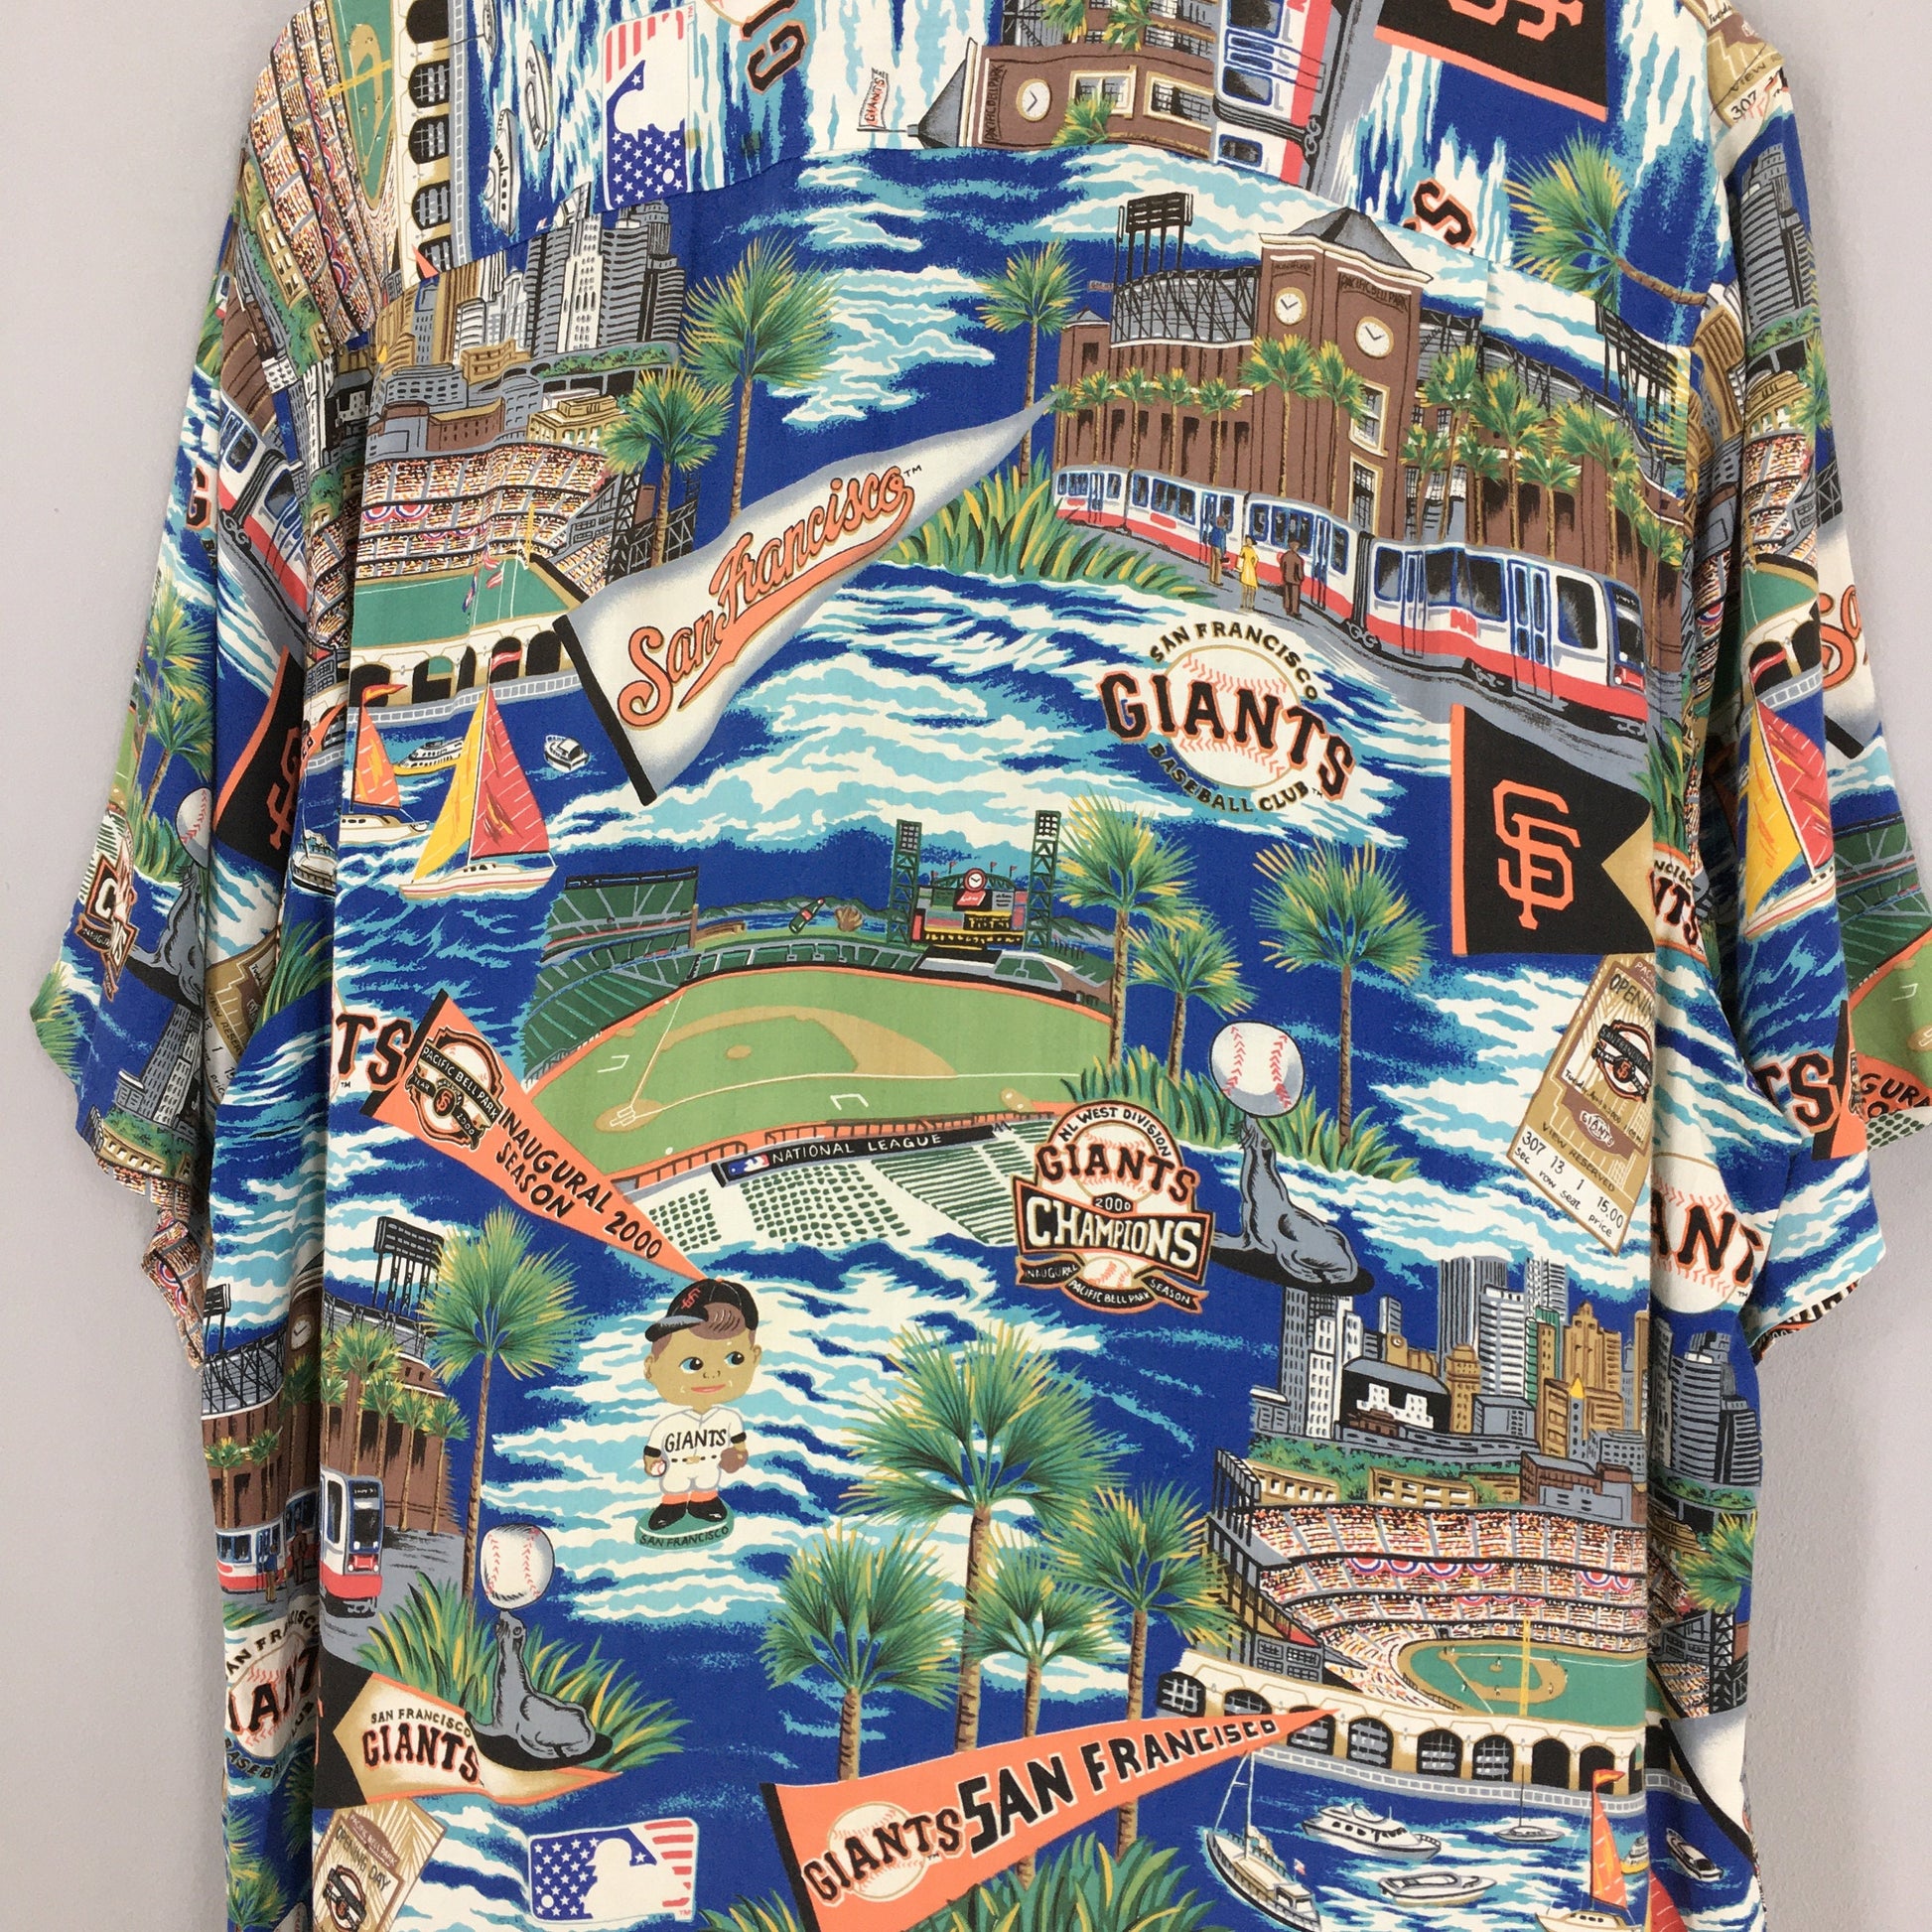 Reyn Spooner Hawaiian San Francisco Giants MLB Rayon Shirt Large